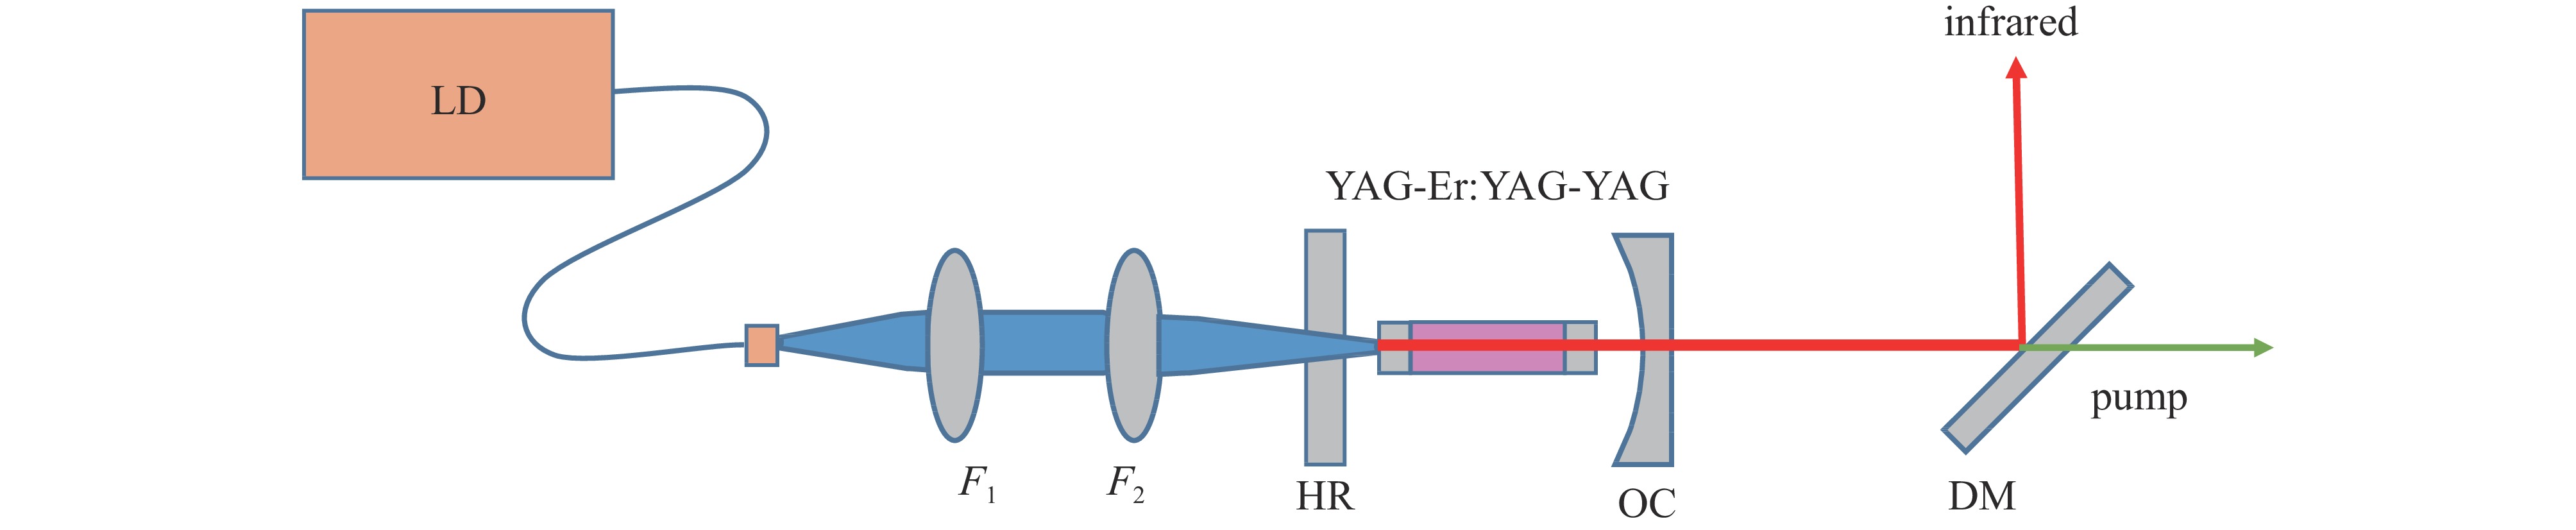 Experimental setup of Er:YAG laser